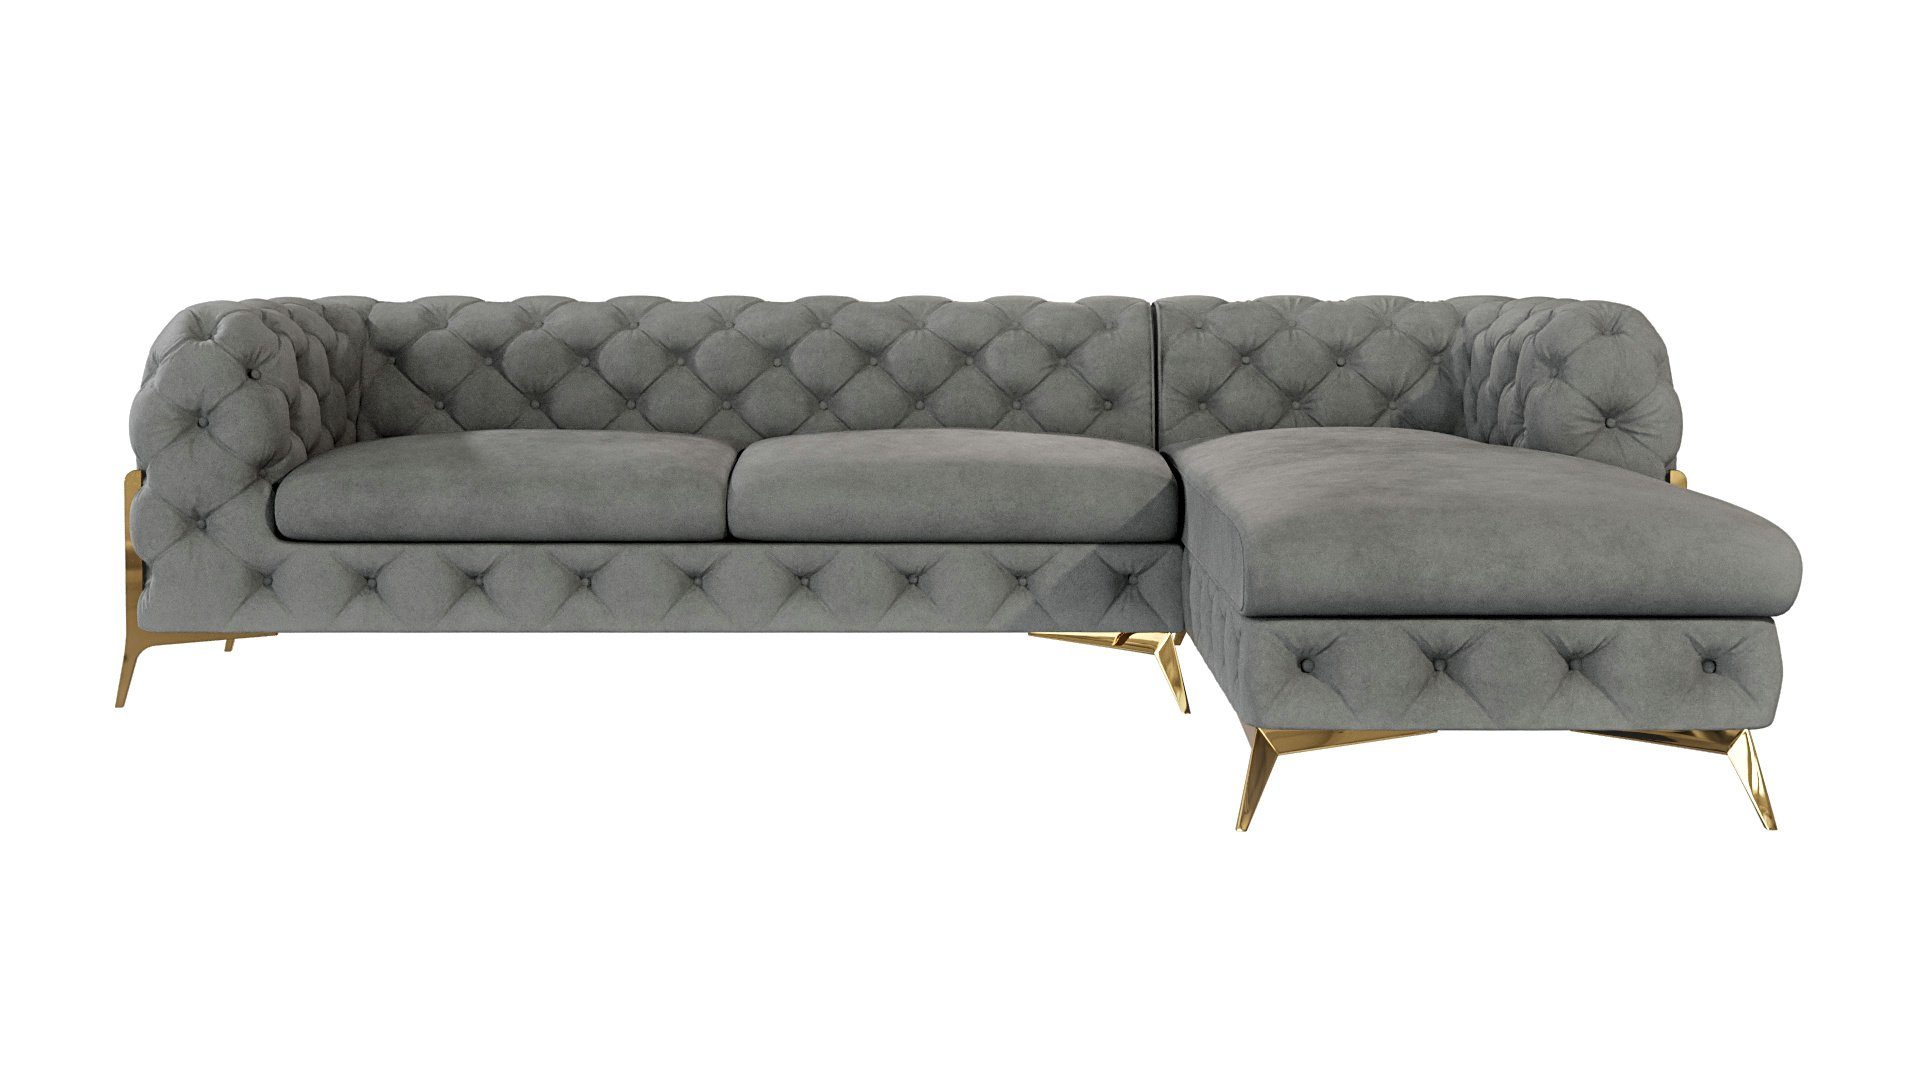 S-Style Möbel Ecksofa mit mane Grau Ashley Metall mit Füßen, Wellenfederung bestellbar, links mit Chesterfield mane oder Goldene rechts